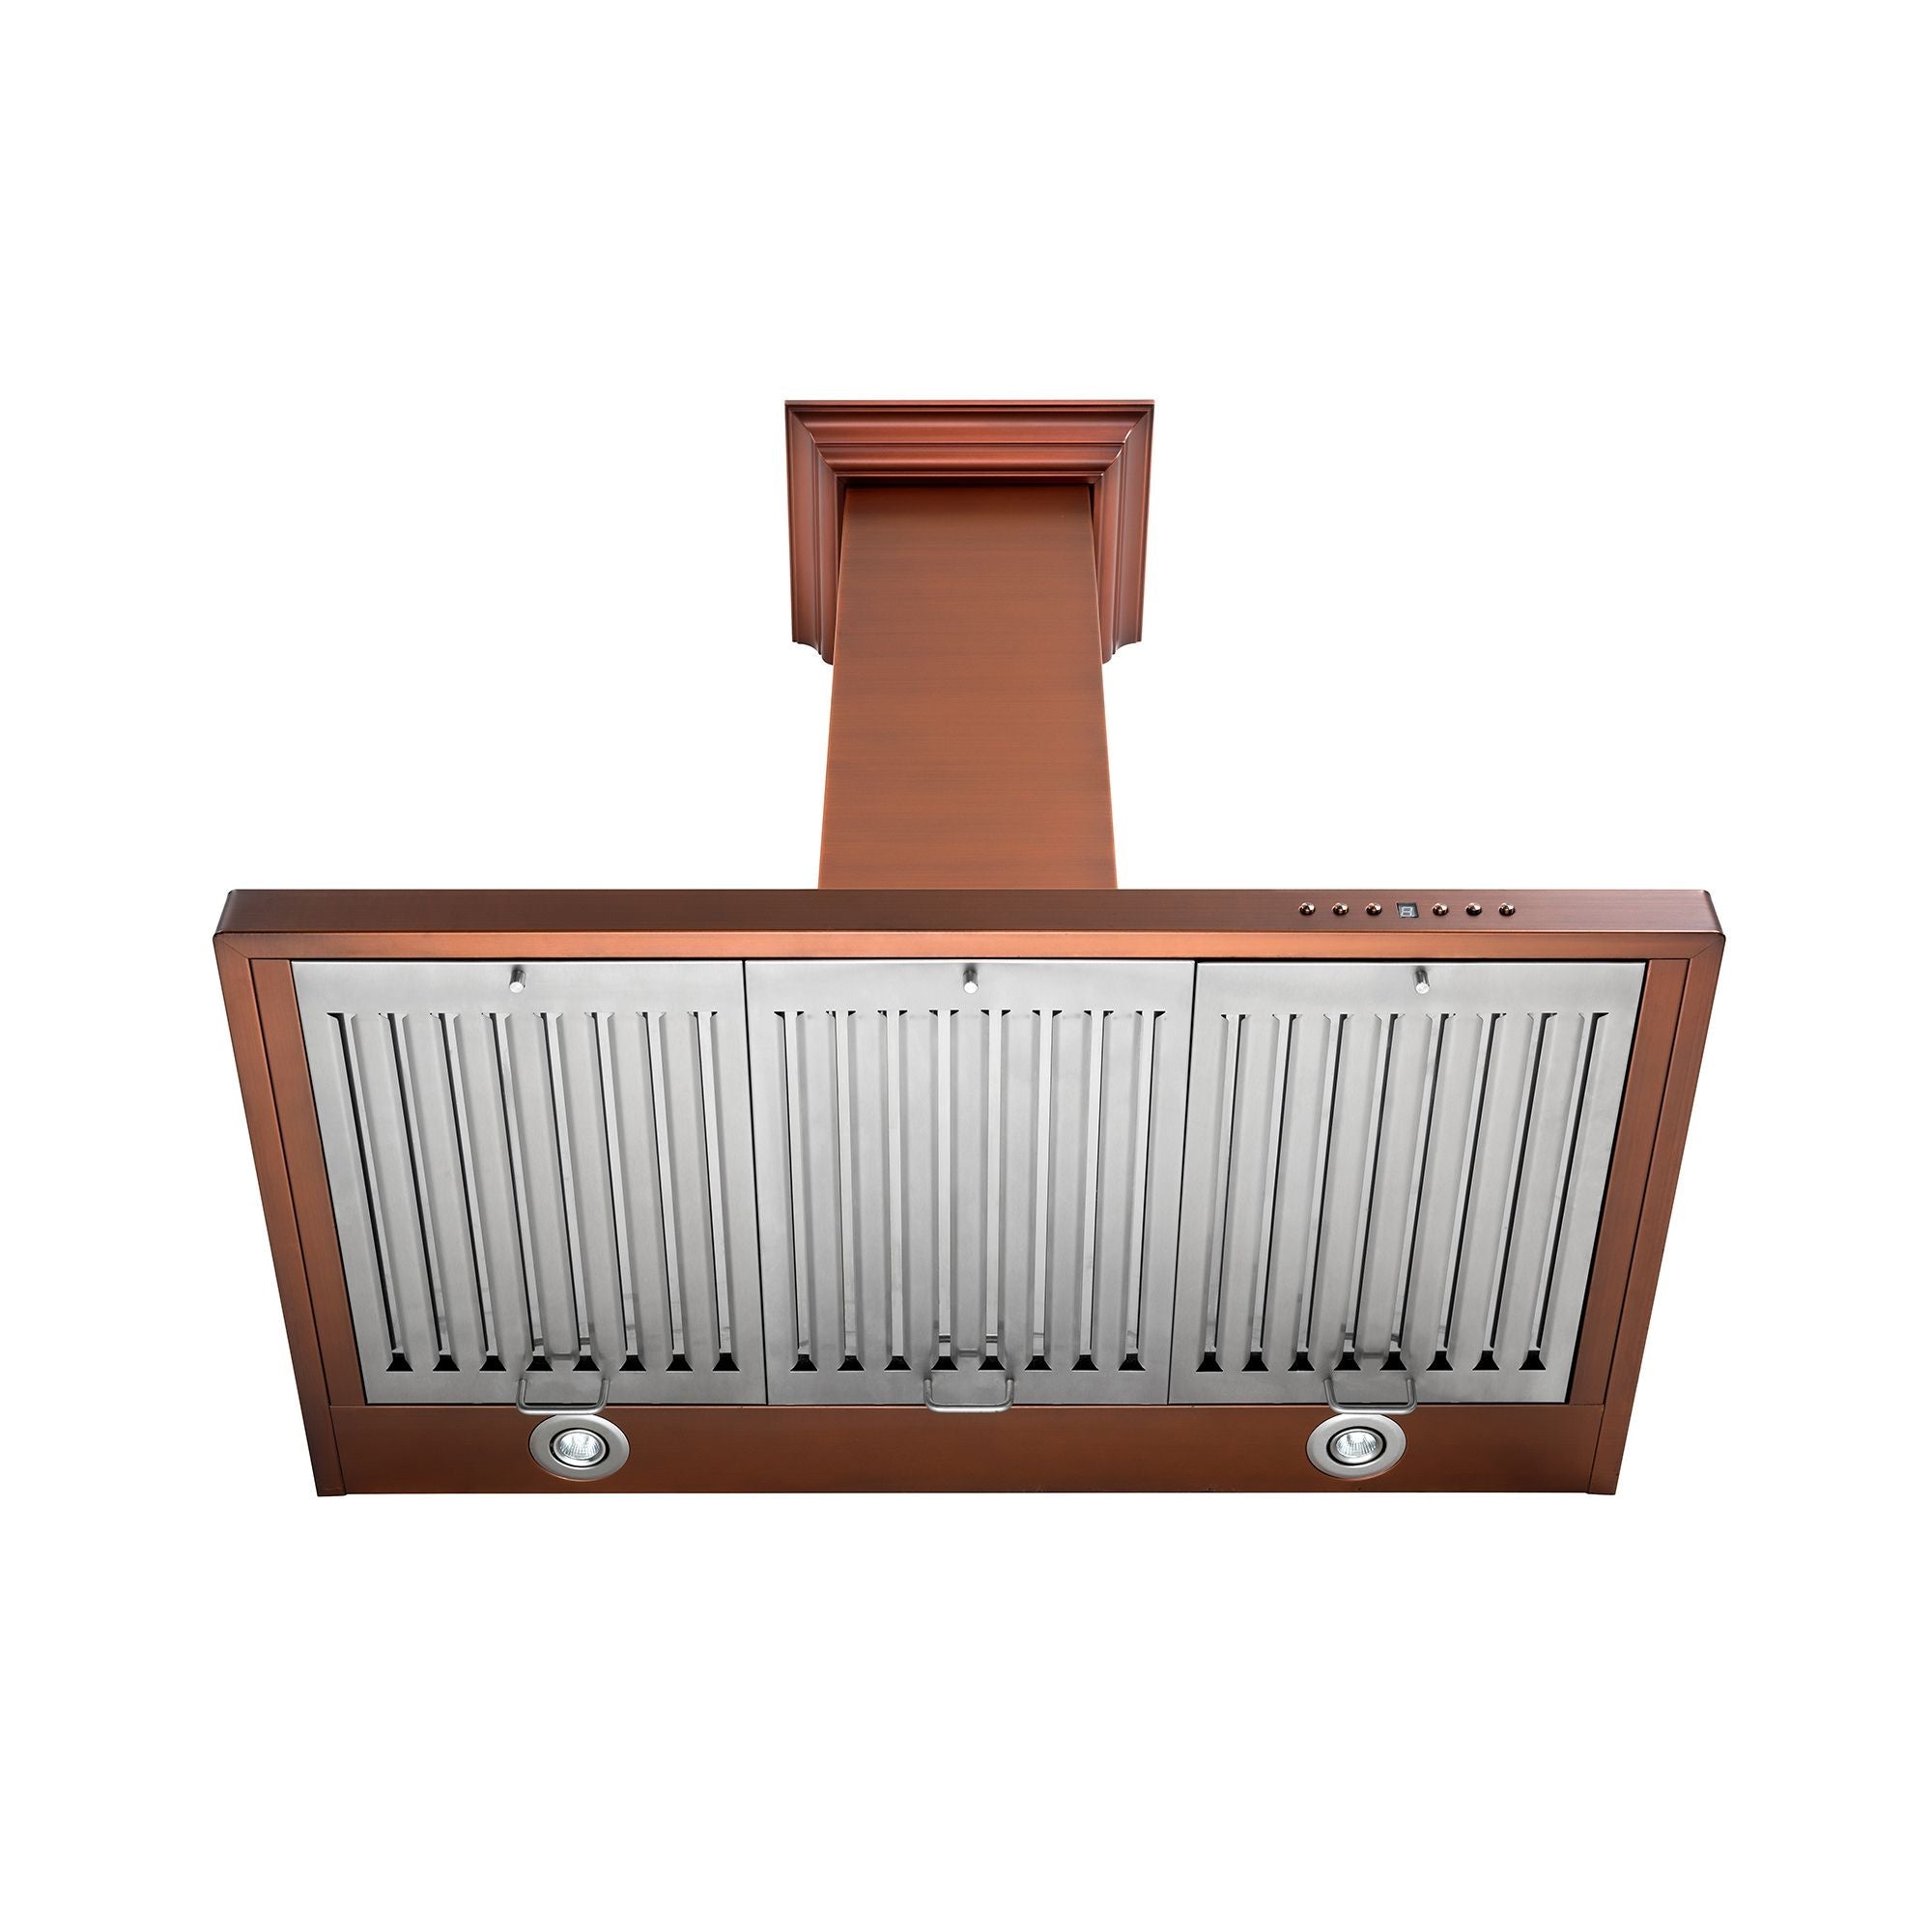 ZLINE Designer Series 7-Layer Copper Wall Mount Range Hood (8KBC) under showing baffle filters and LED lighting.